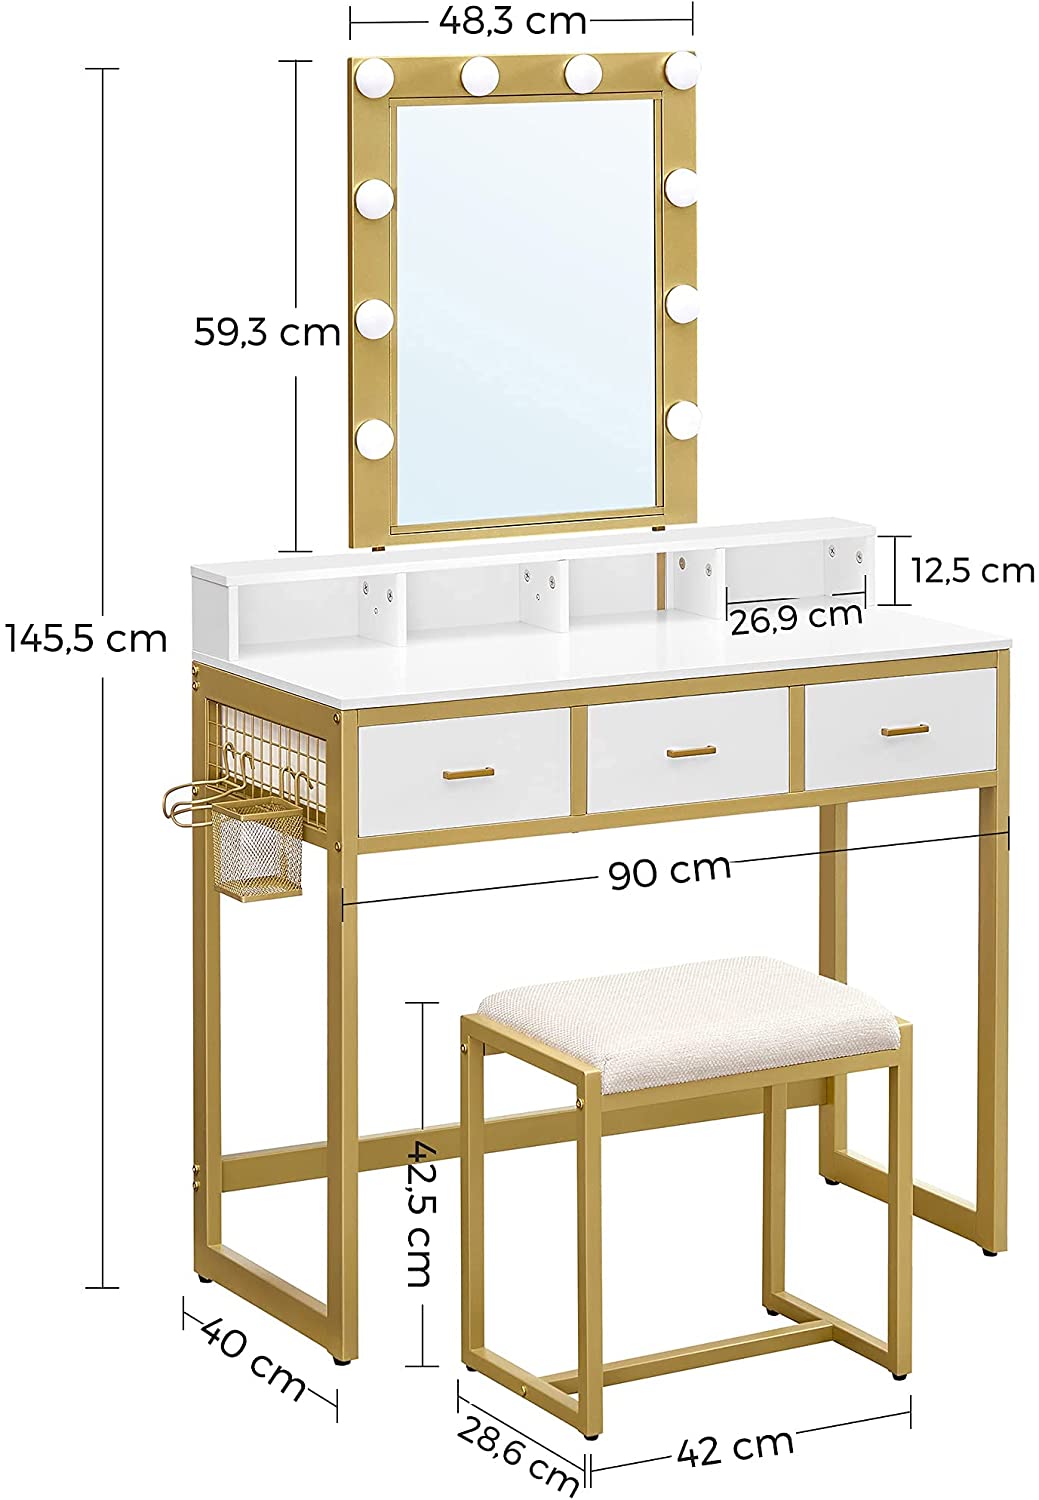 Coiffeuse Nancy's Caribou - Table de maquillage - Tabouret - 10 lampes LED - Miroir - 3 tiroirs - Blanc - Or - 90 x 40 x 145,5 cm